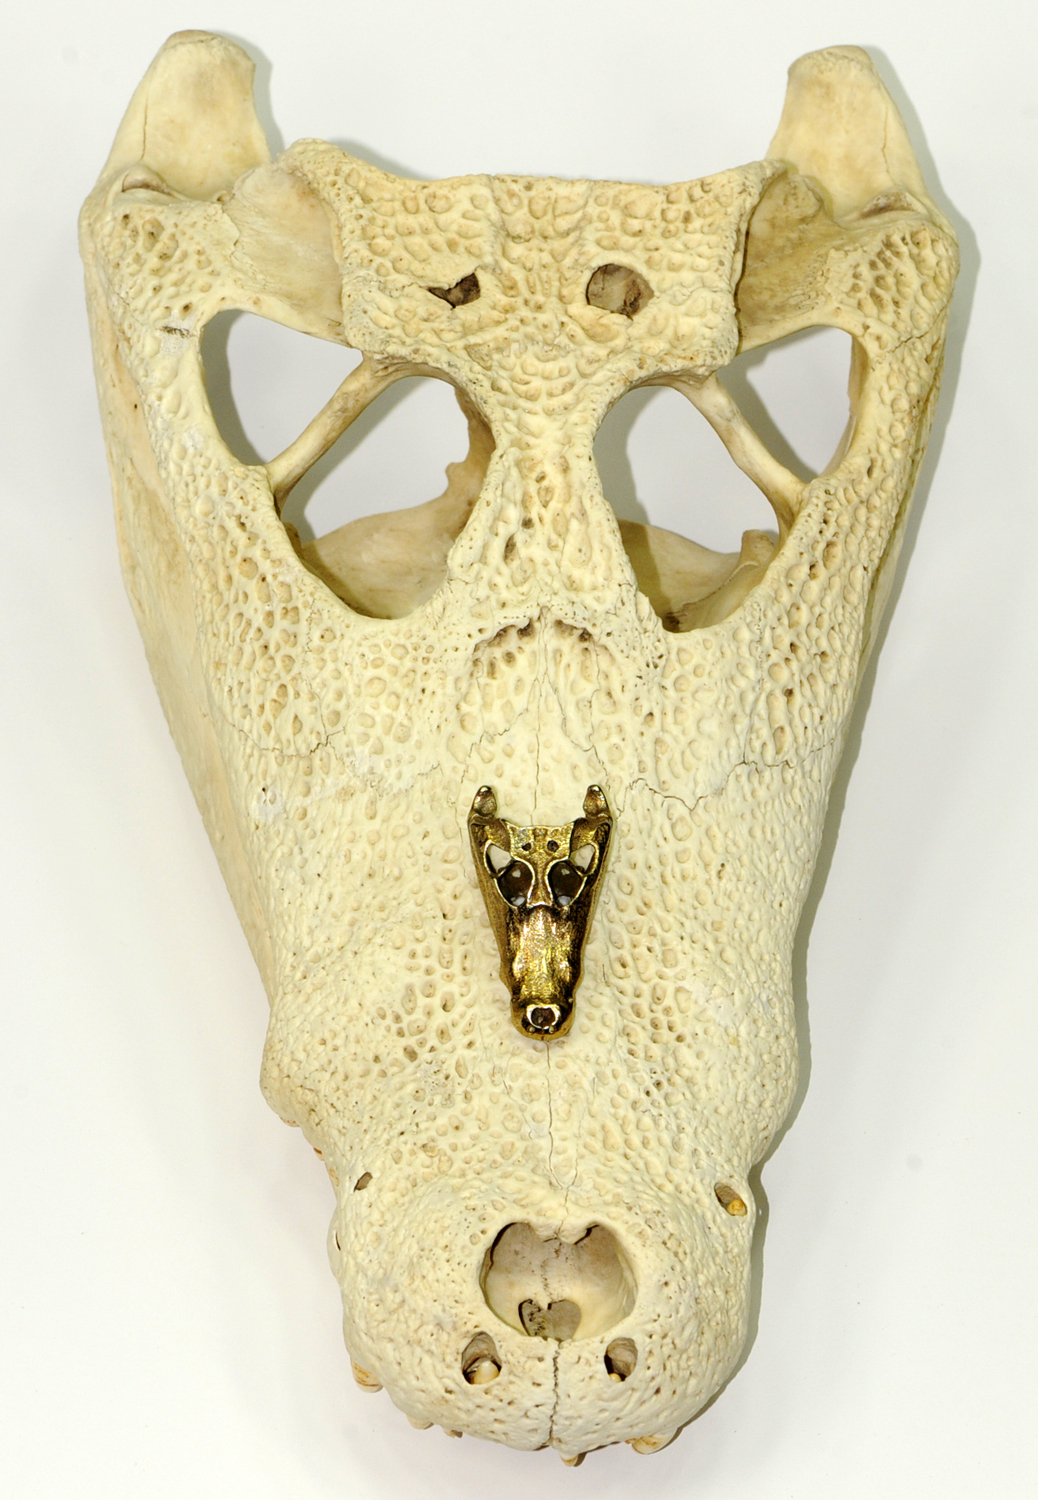 Caiman skull and model.jpg